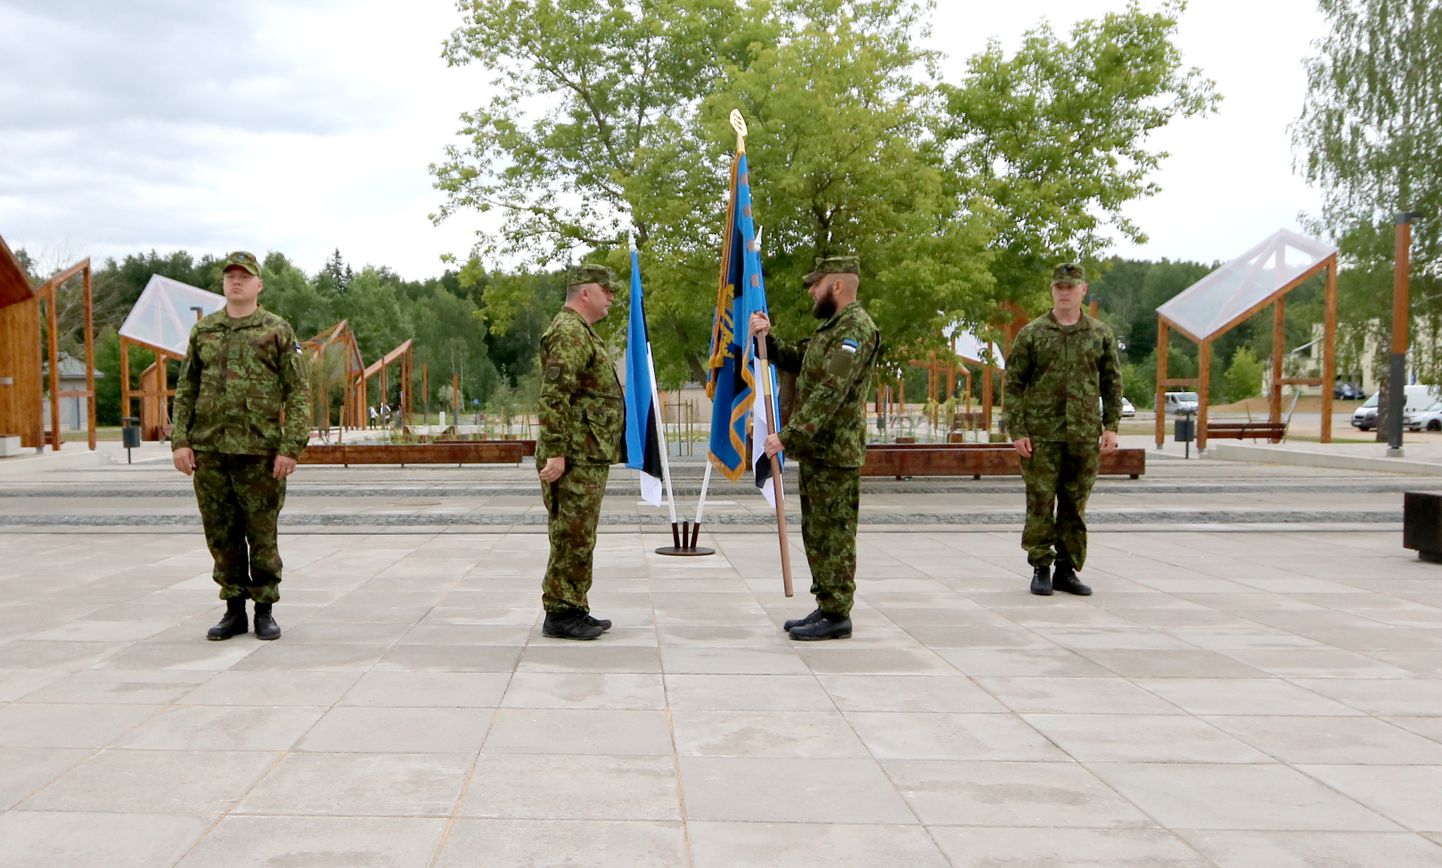 Seitse aastat Kaitseliidu Põlva malevat juhtinud major Janel Säkki (vasakult esimene) loovutas lipu sümboolselt Kaitseliidu ülemale Meelis Kiilile, kes andis selle omakorda üle uuele malevapealikule Raivo Pehkile.